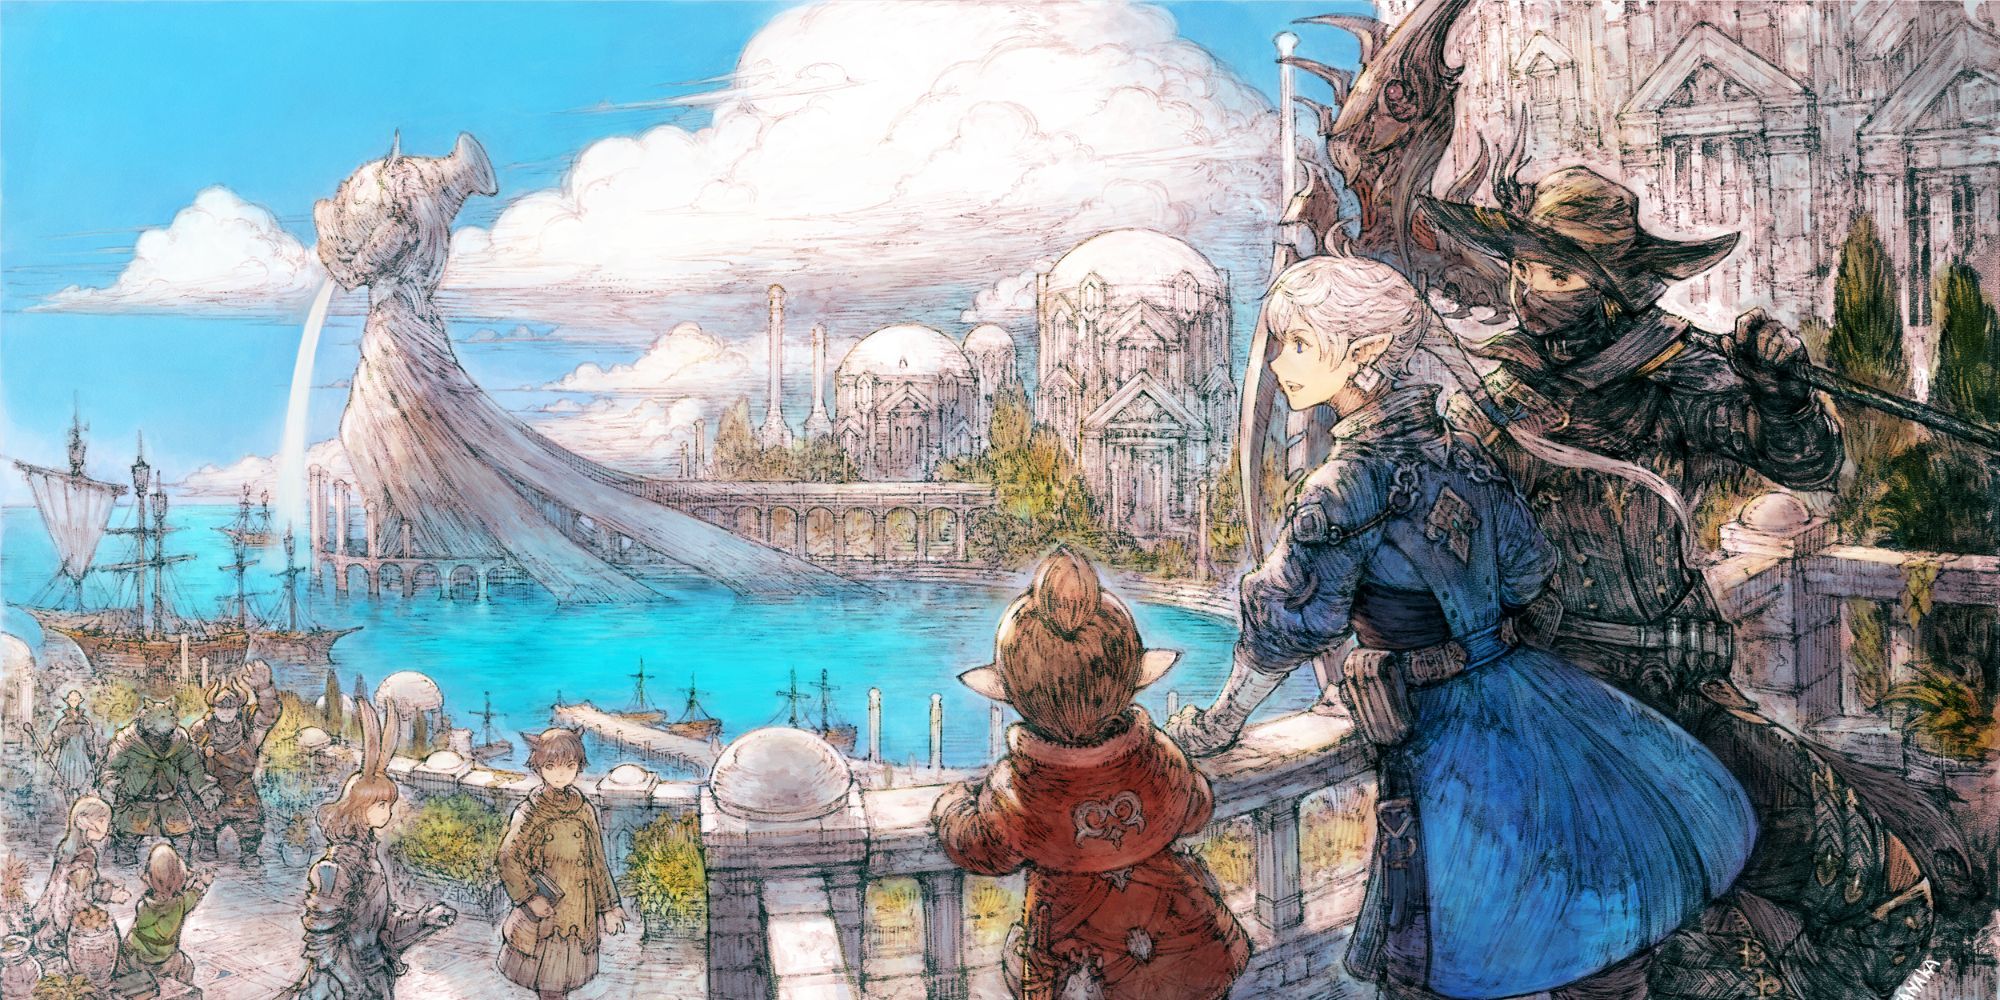 Final Fantasy 14 concept art of Old Sharlayan in Endwalker